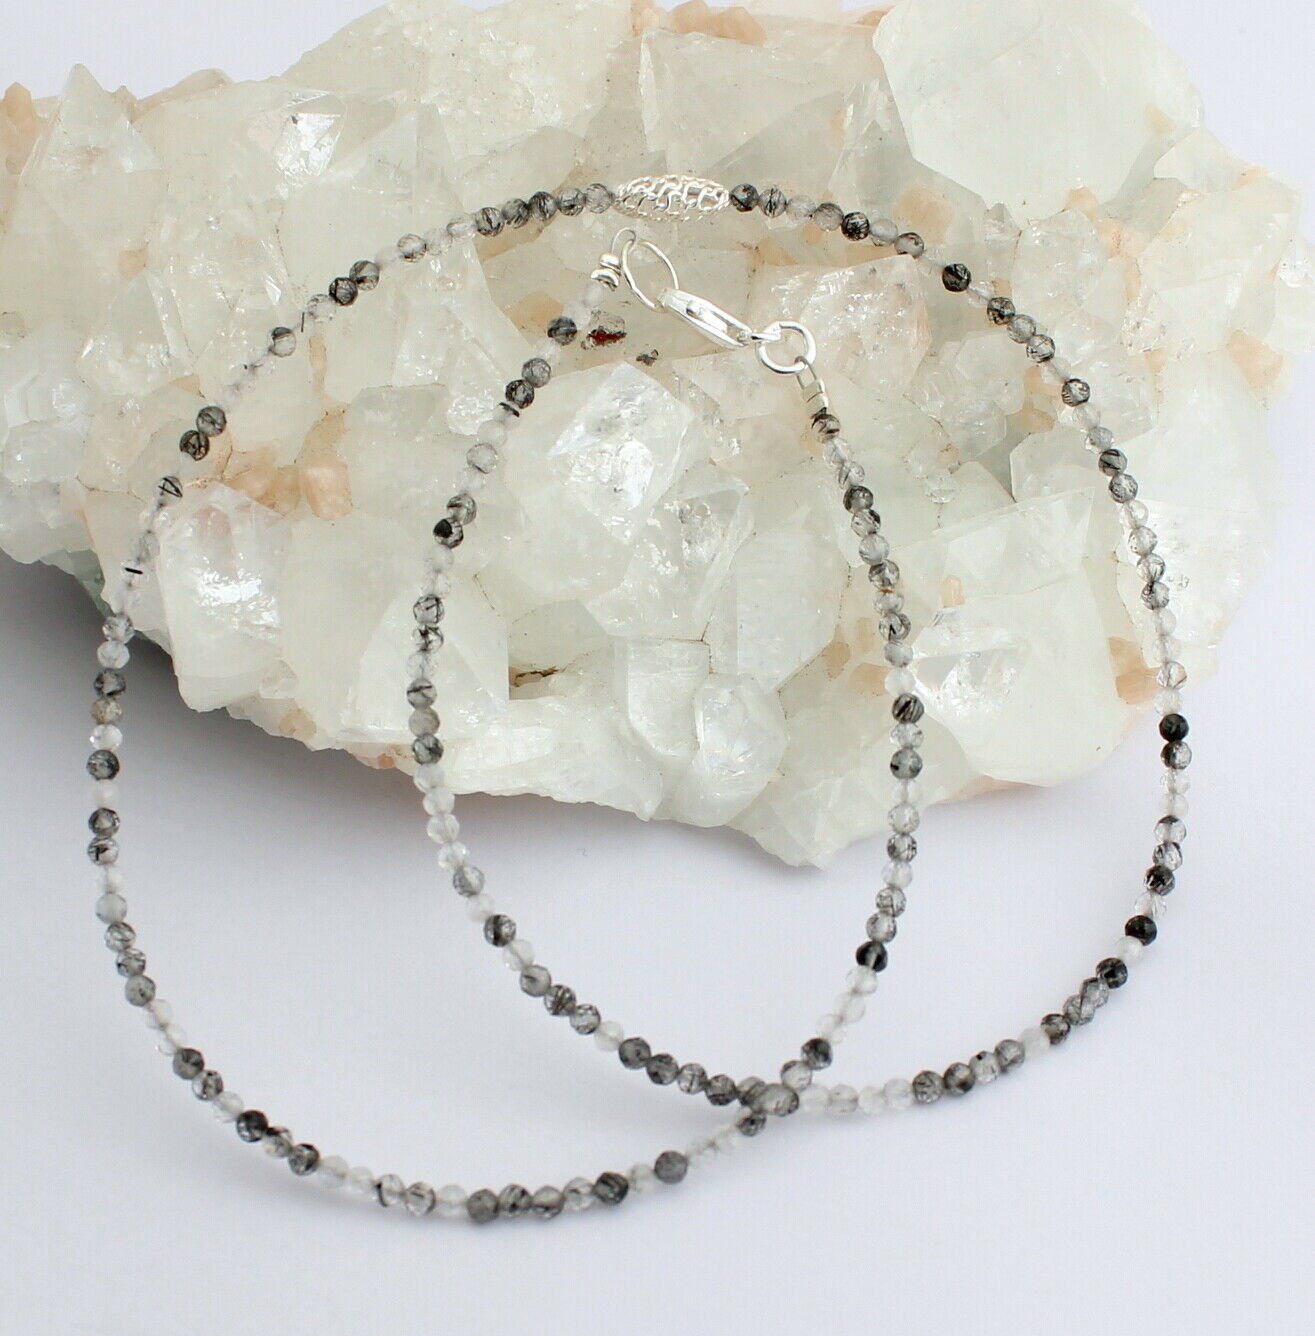 Turmalinquarz (Bergkristall mit Schörl) Halskette in 925 Silber Verschluss